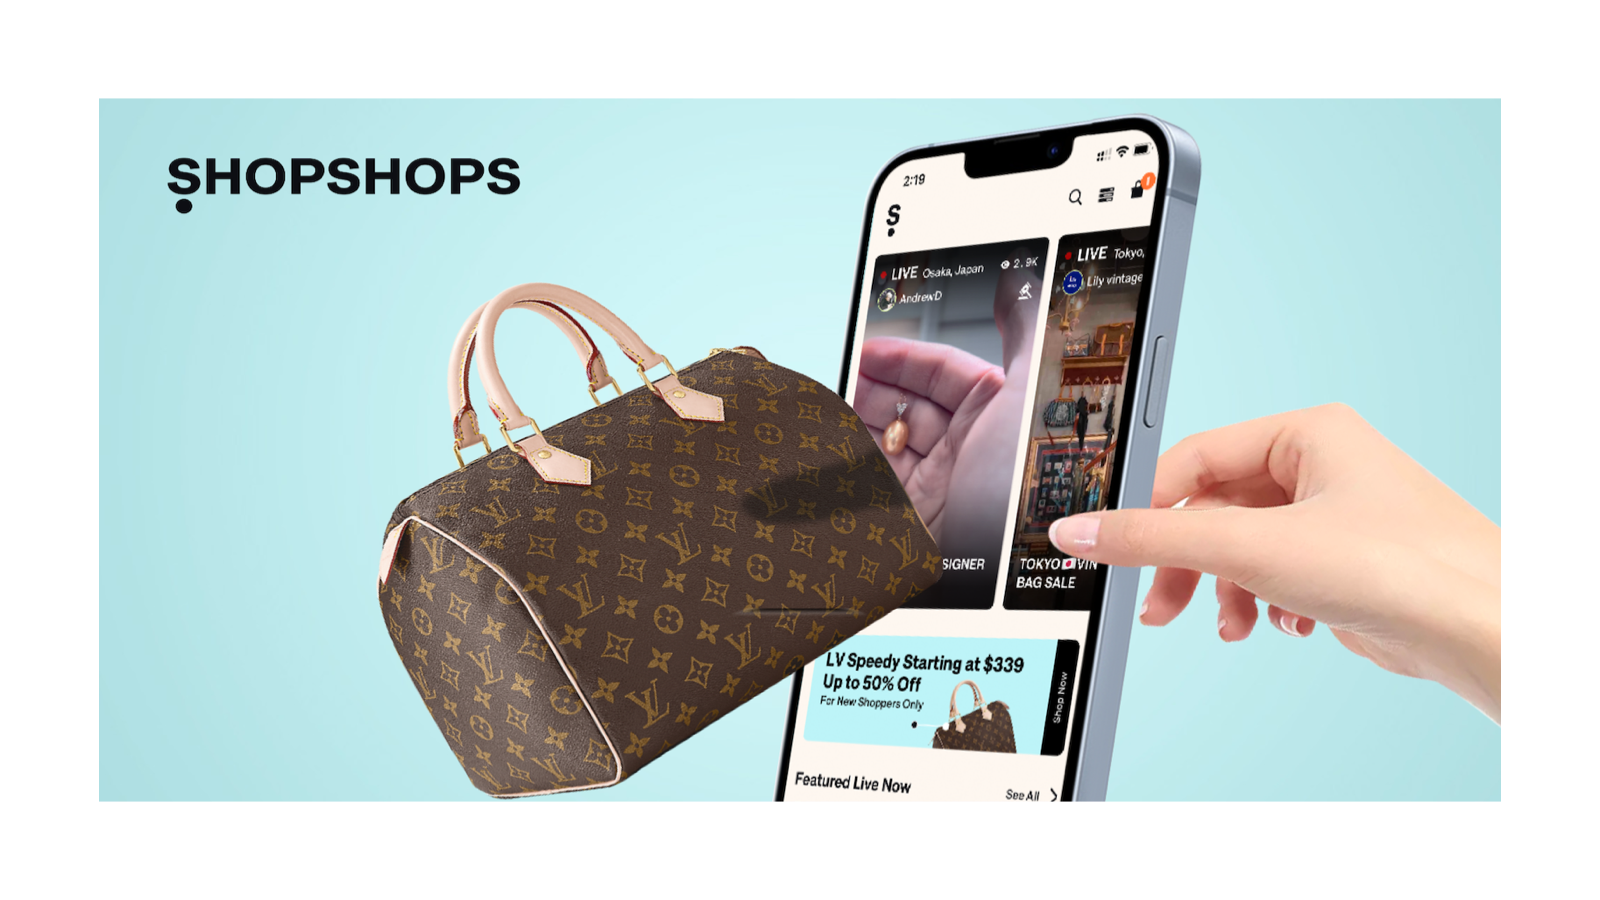 Sälj live på ShopShops. Hantera produkter och mer i Shopify.